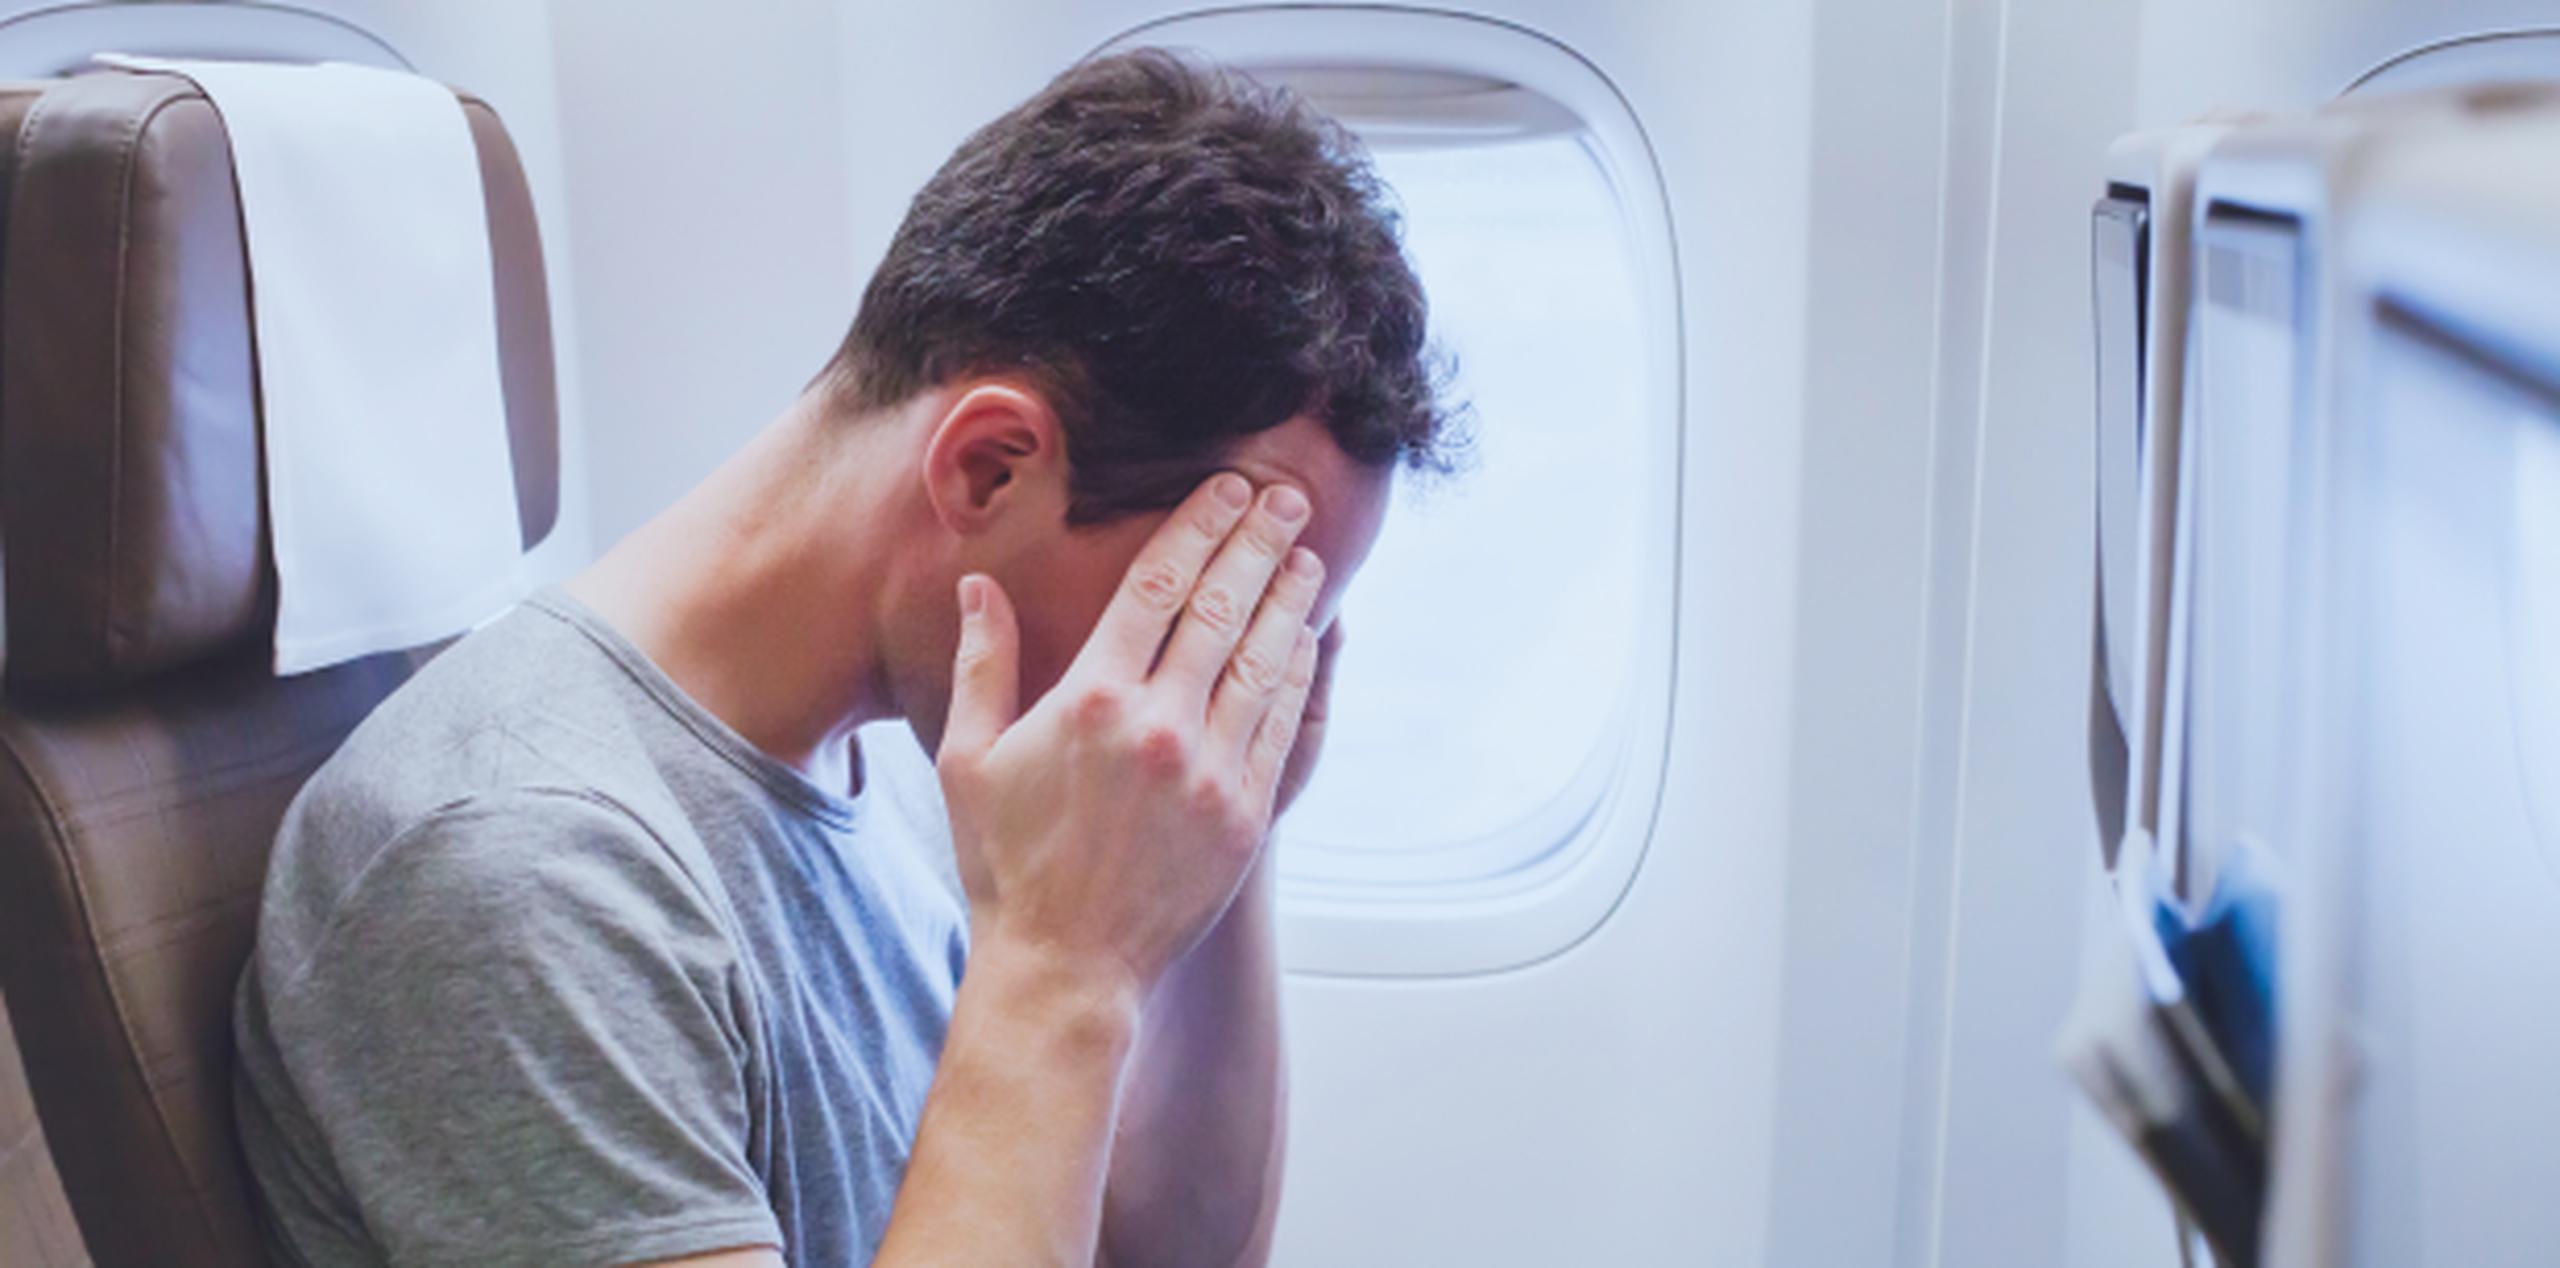 Tu miedo puede aumentar si te pones a investigar sobre noticias de accidentes aéreos. (Shutterstock)